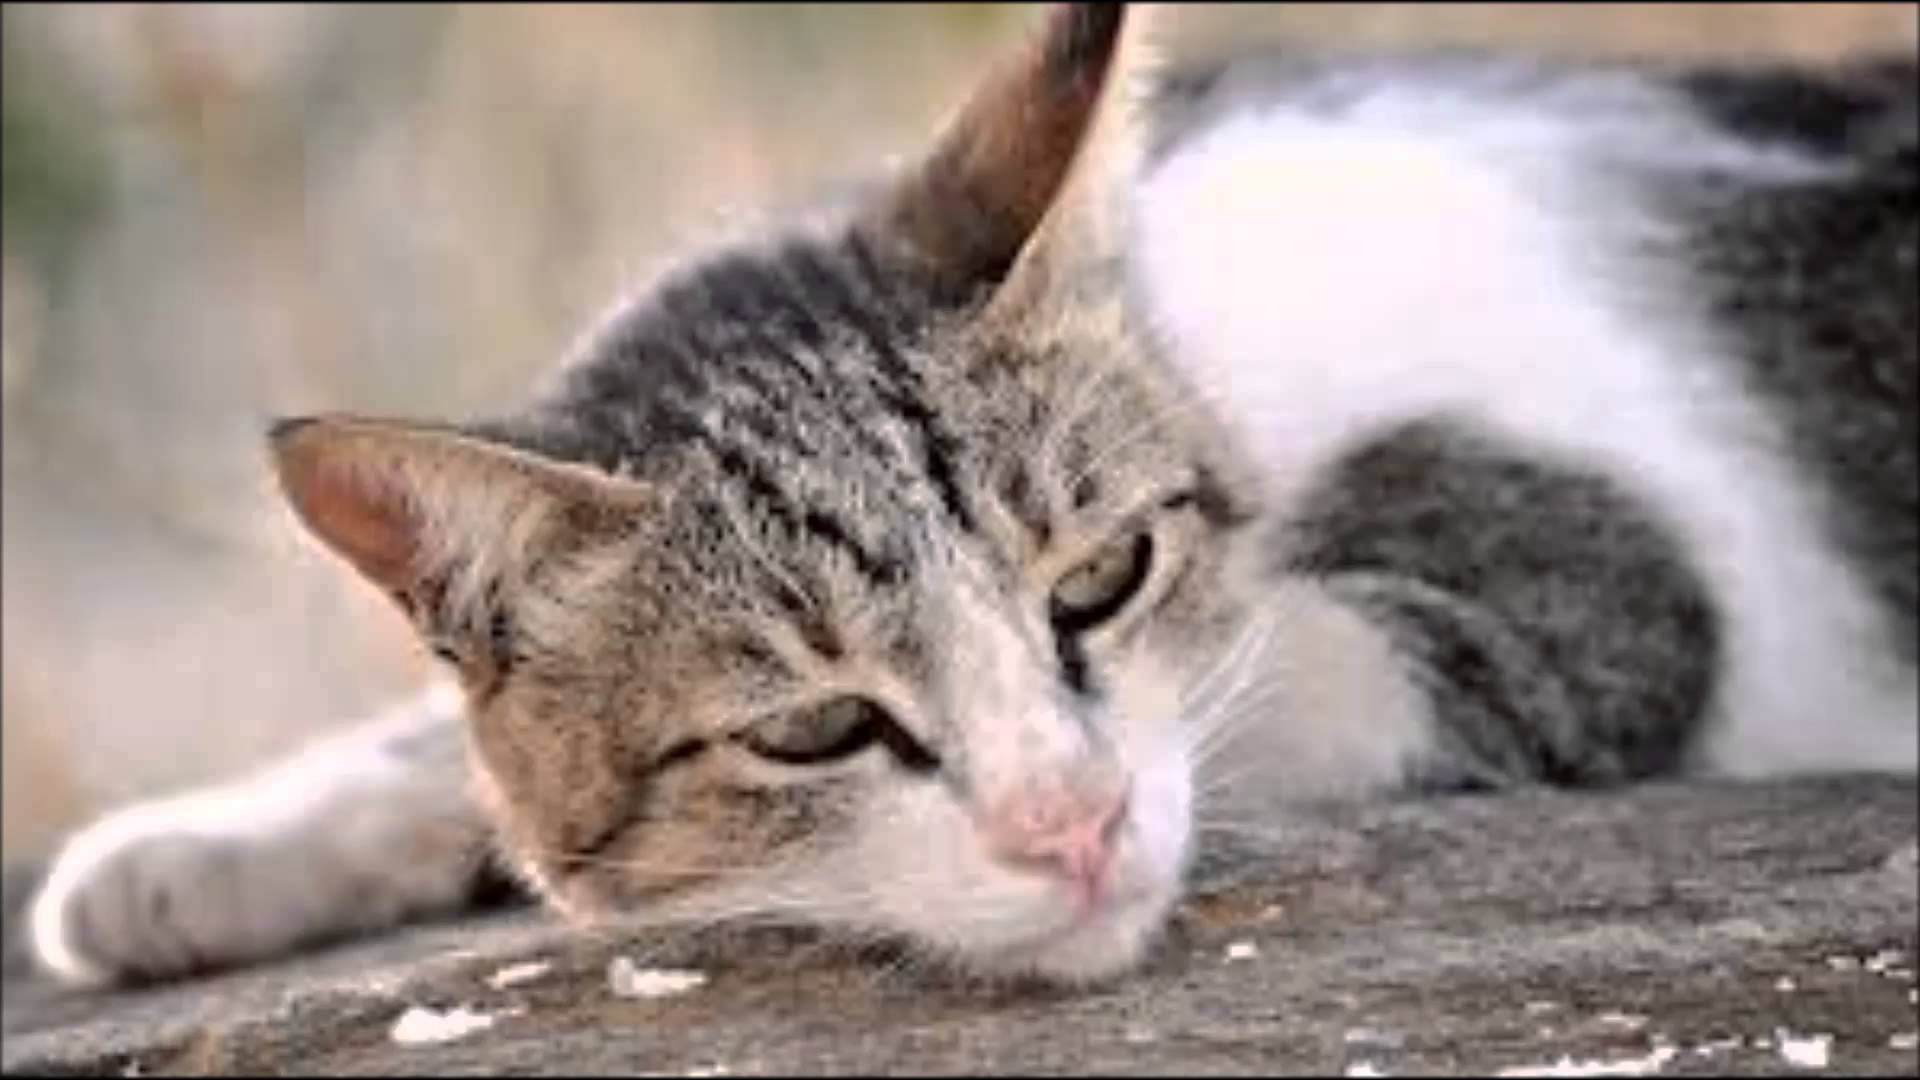 Sad Cats - YouTube